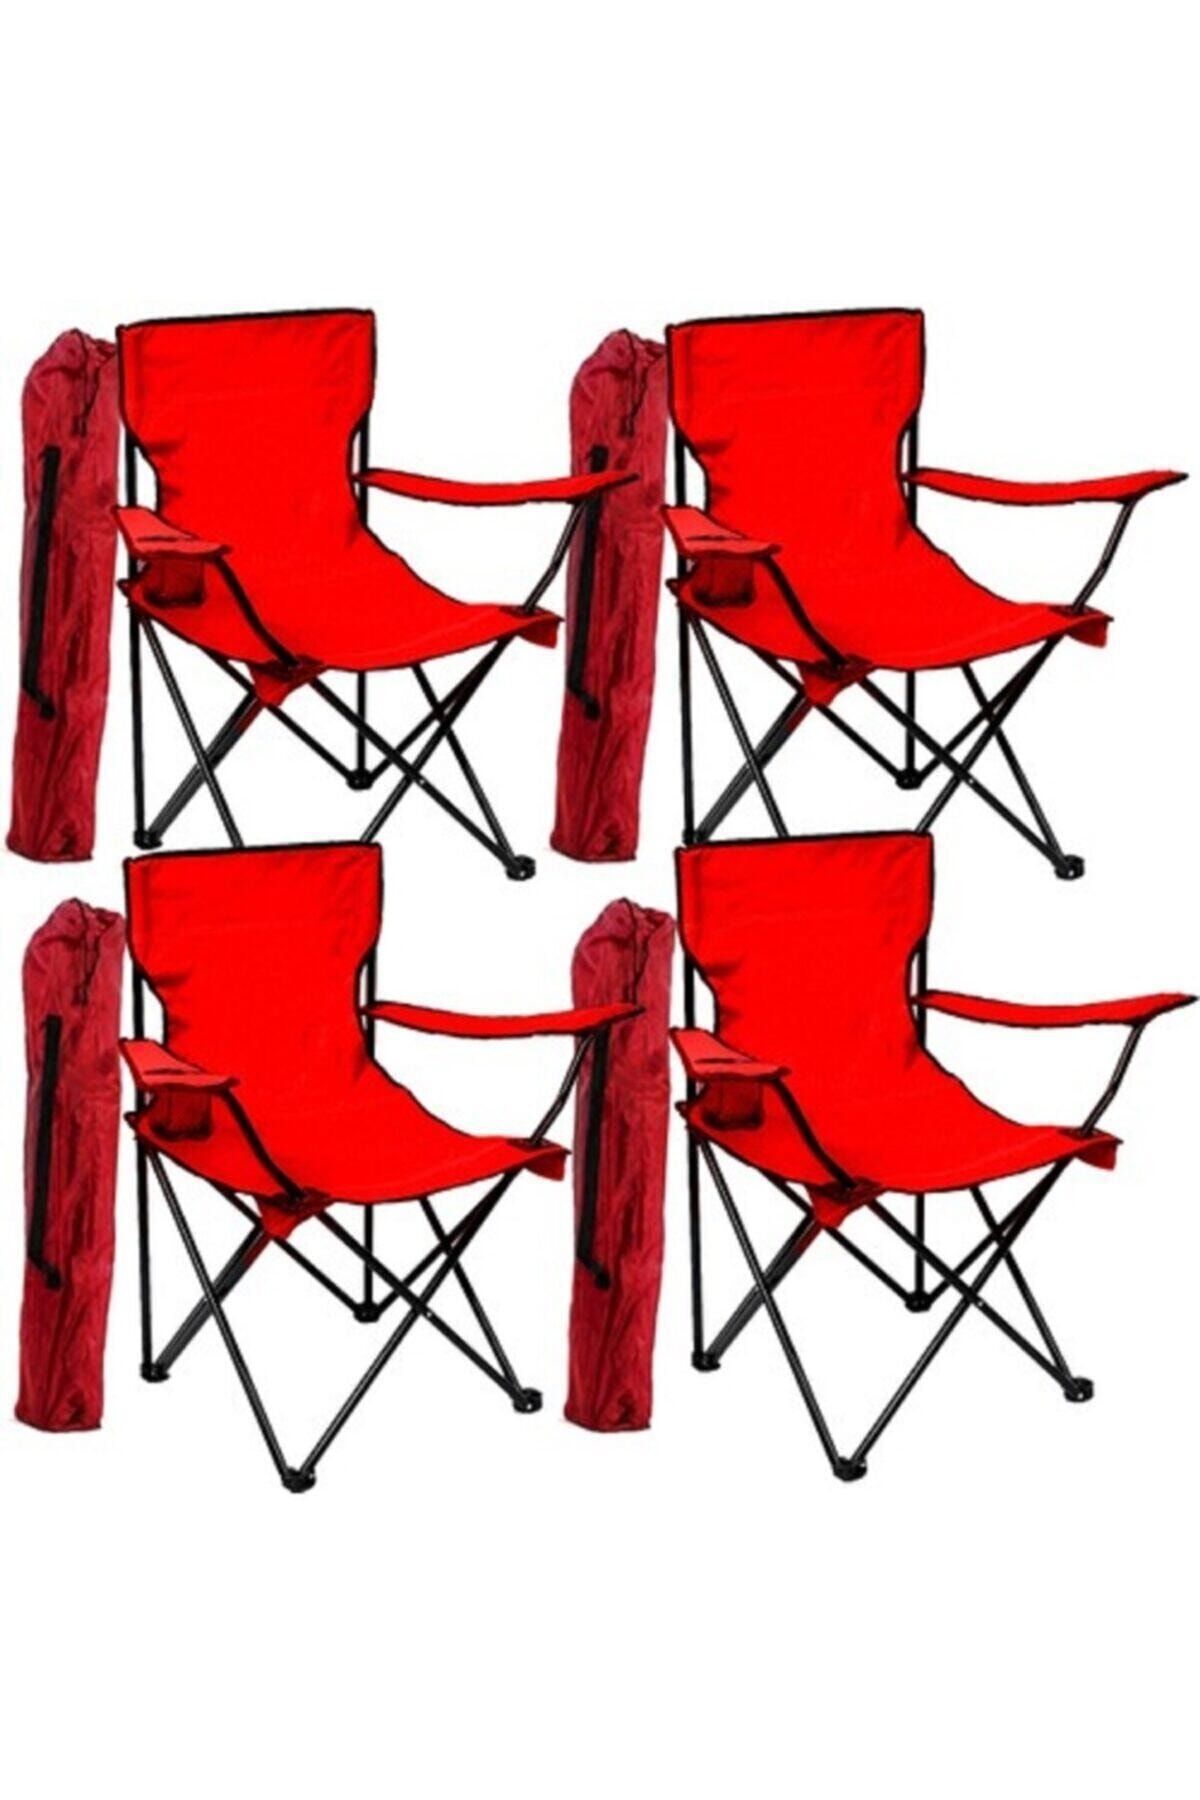 Toysan Katlanır Çantalı Kamp Sandalyesi Kırmızı 4 Adet